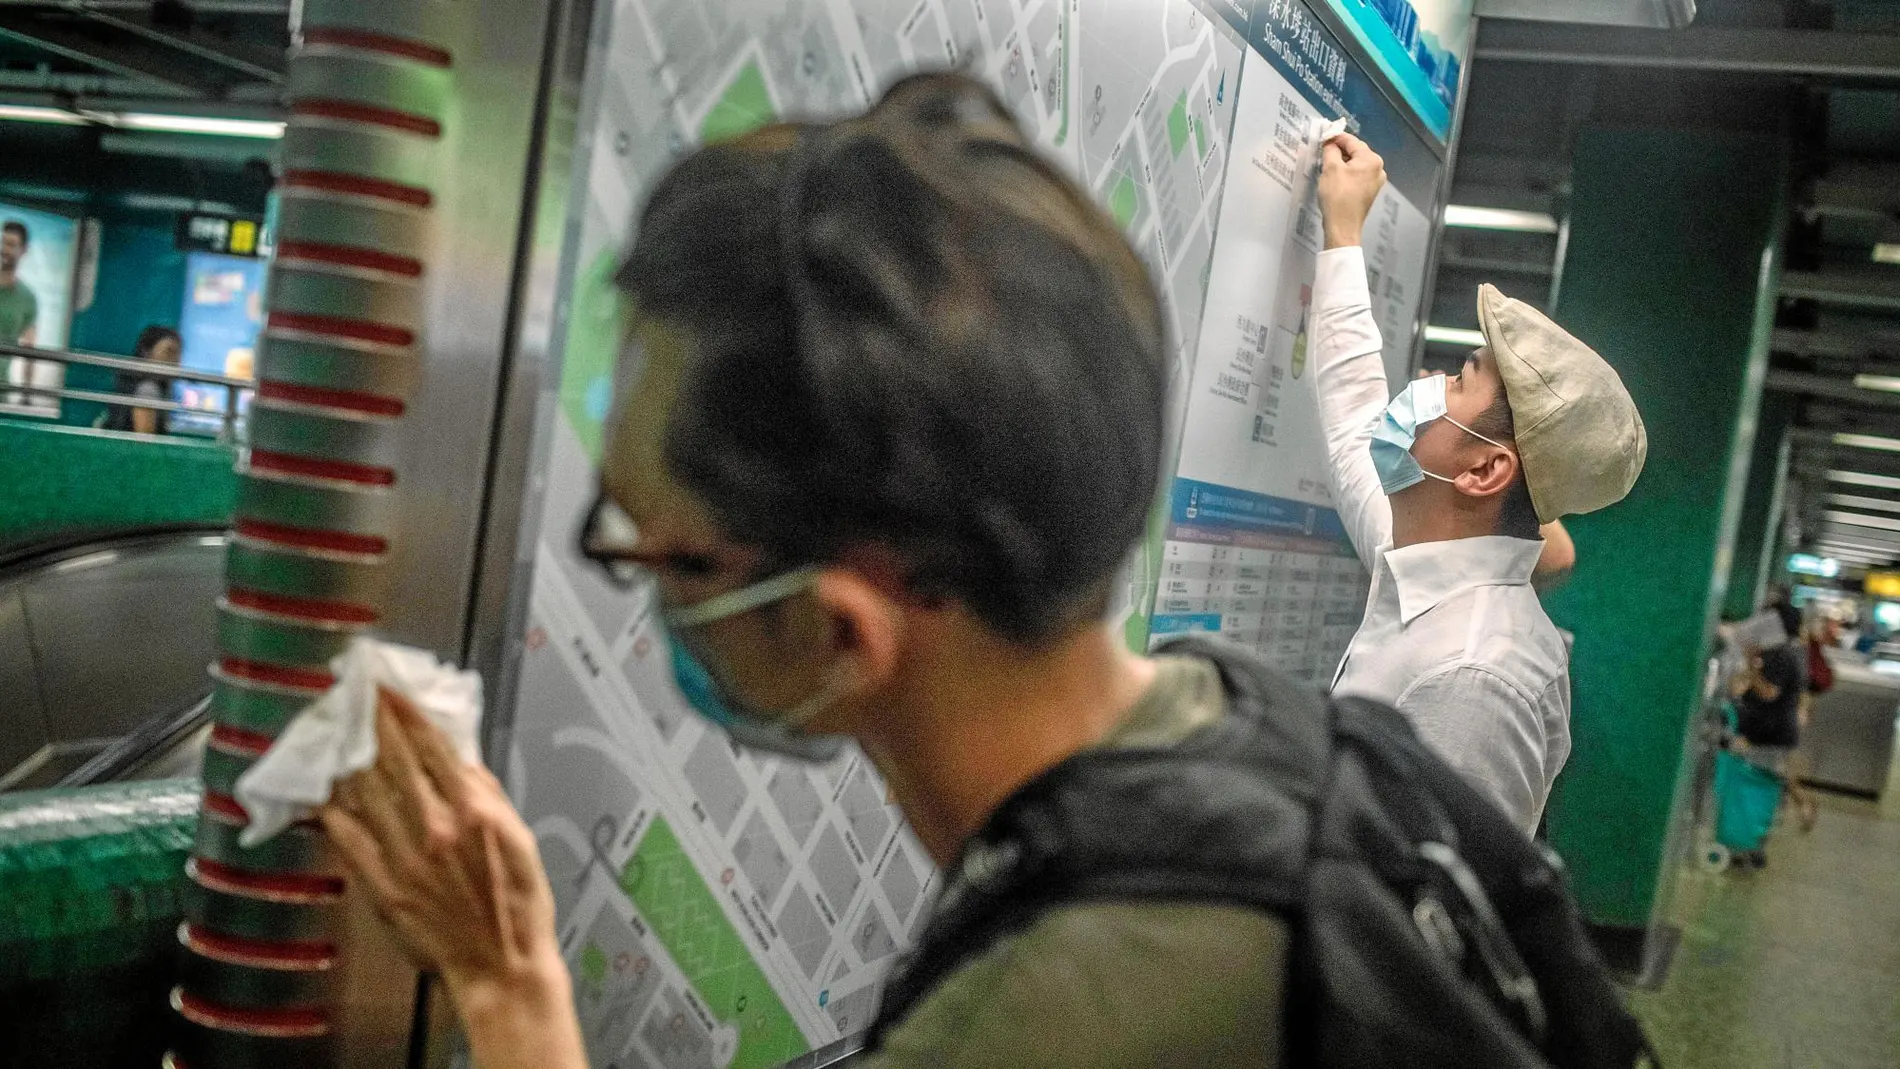 Dos activistas limpian un tablón de avisos en la estación de metro de Sham Shui Po después de la masiva manifestación del domingo / Efe